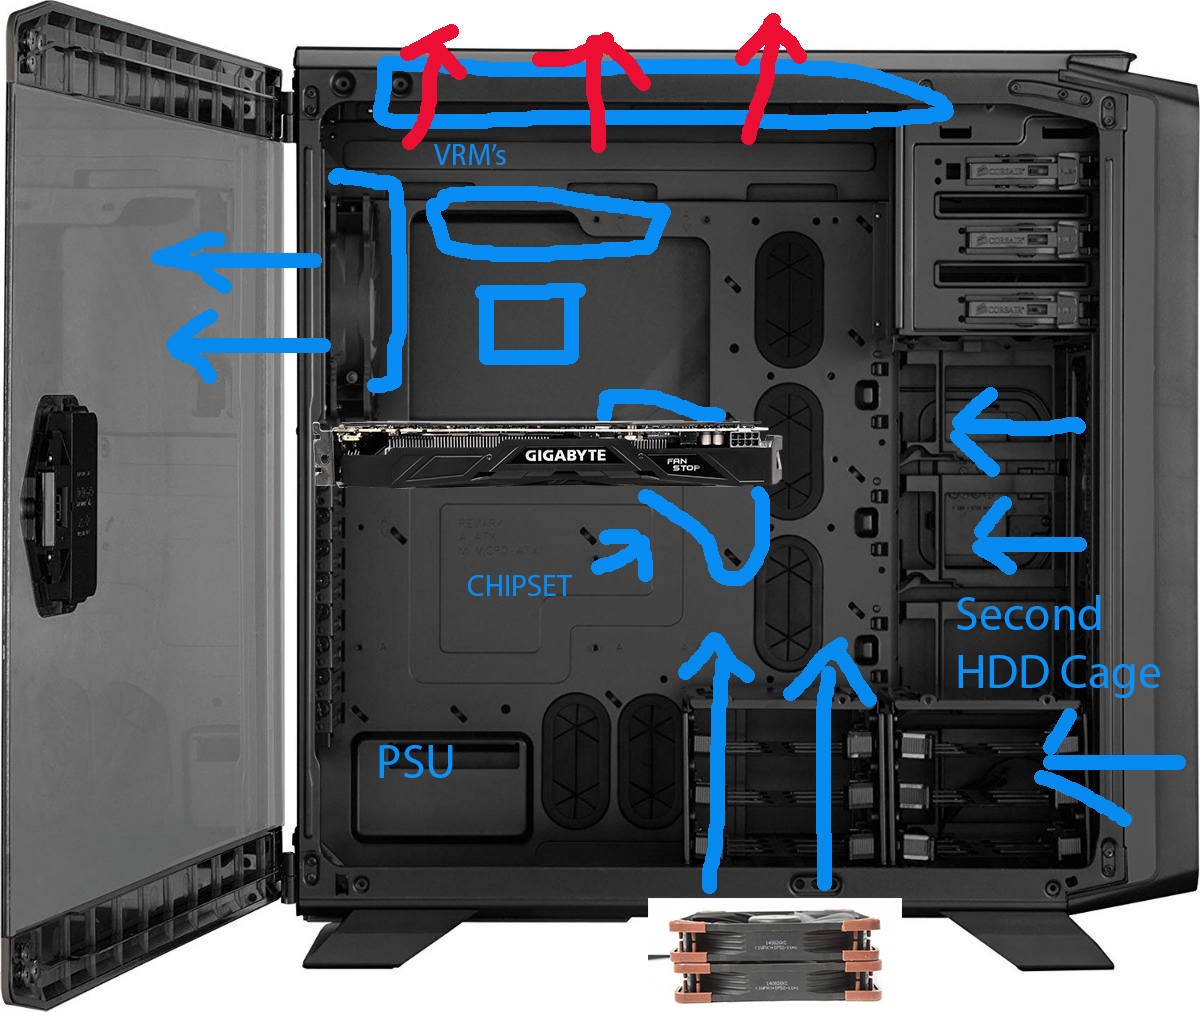 specielt Udgående Afledning Fan placement/Orientation for Proper Airflow + VRM hot? - Cooling - Linus  Tech Tips